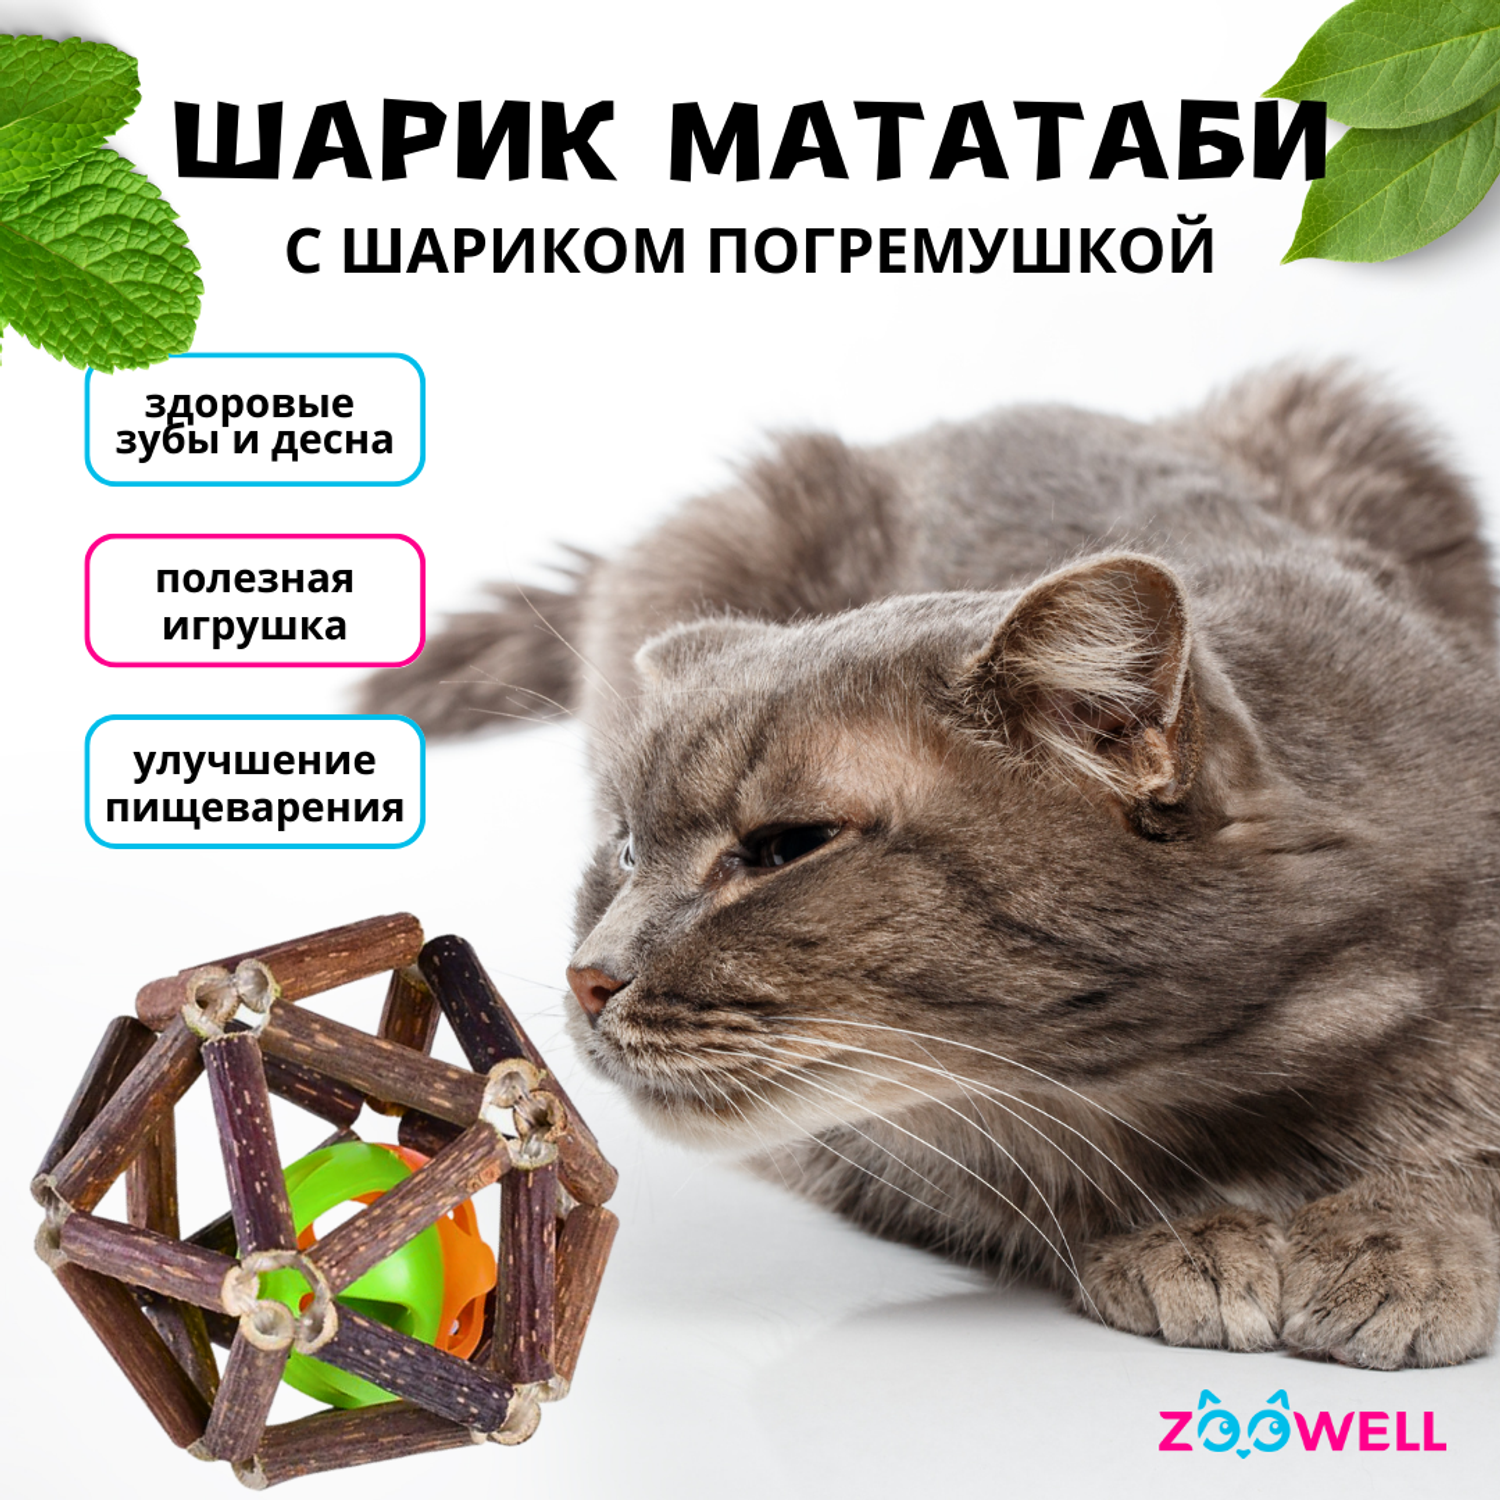 Игрушка для кошек ZDK ZooWell шар из палочек Мататаби для чистки зубов 7.5см - фото 2